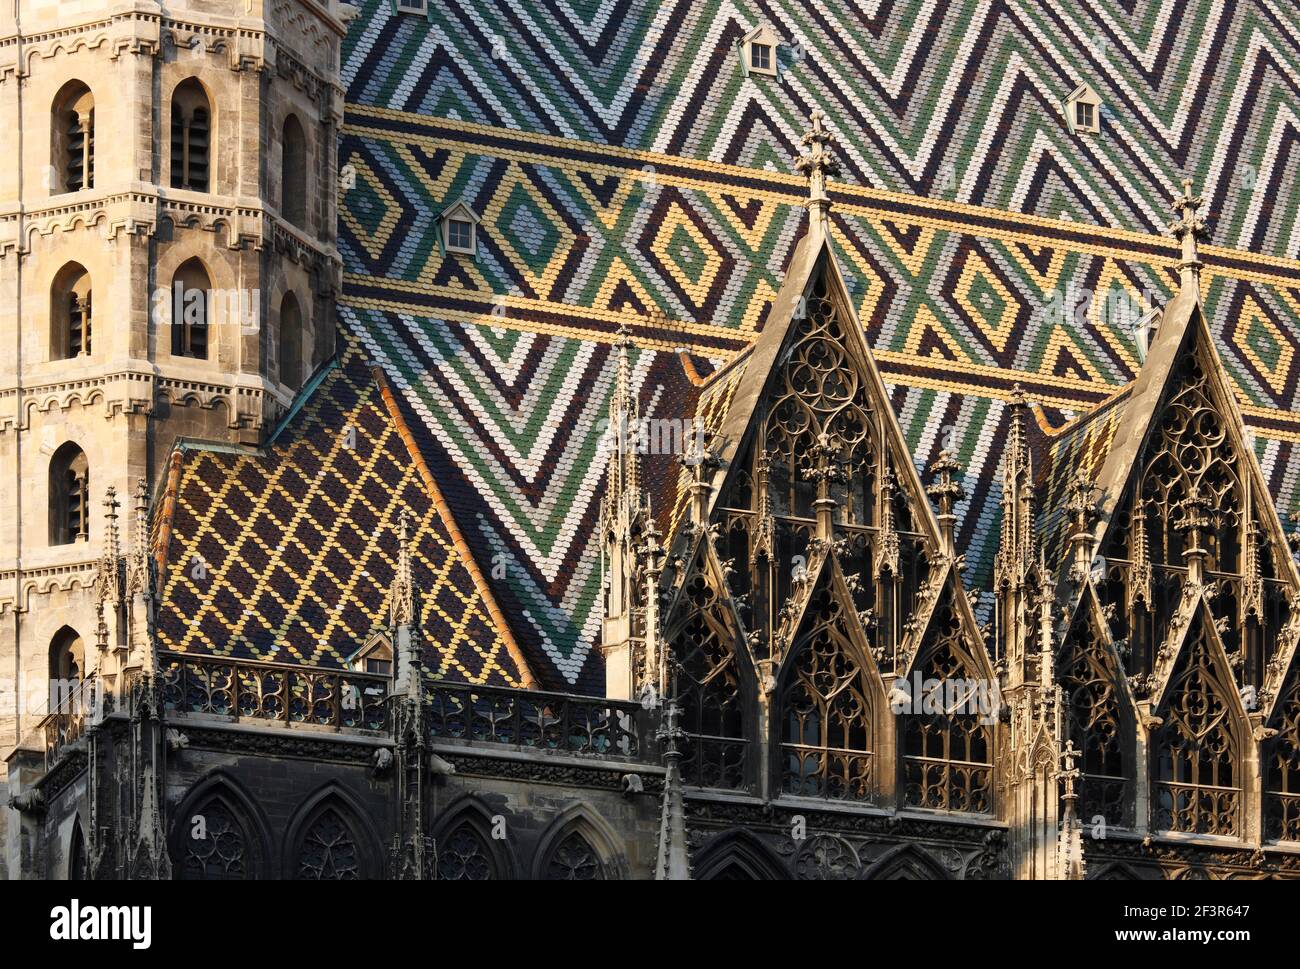 Carreaux colorés, dortoirs, cathédrale gothique Saint-Étienne, Vienne, Autriche Banque D'Images